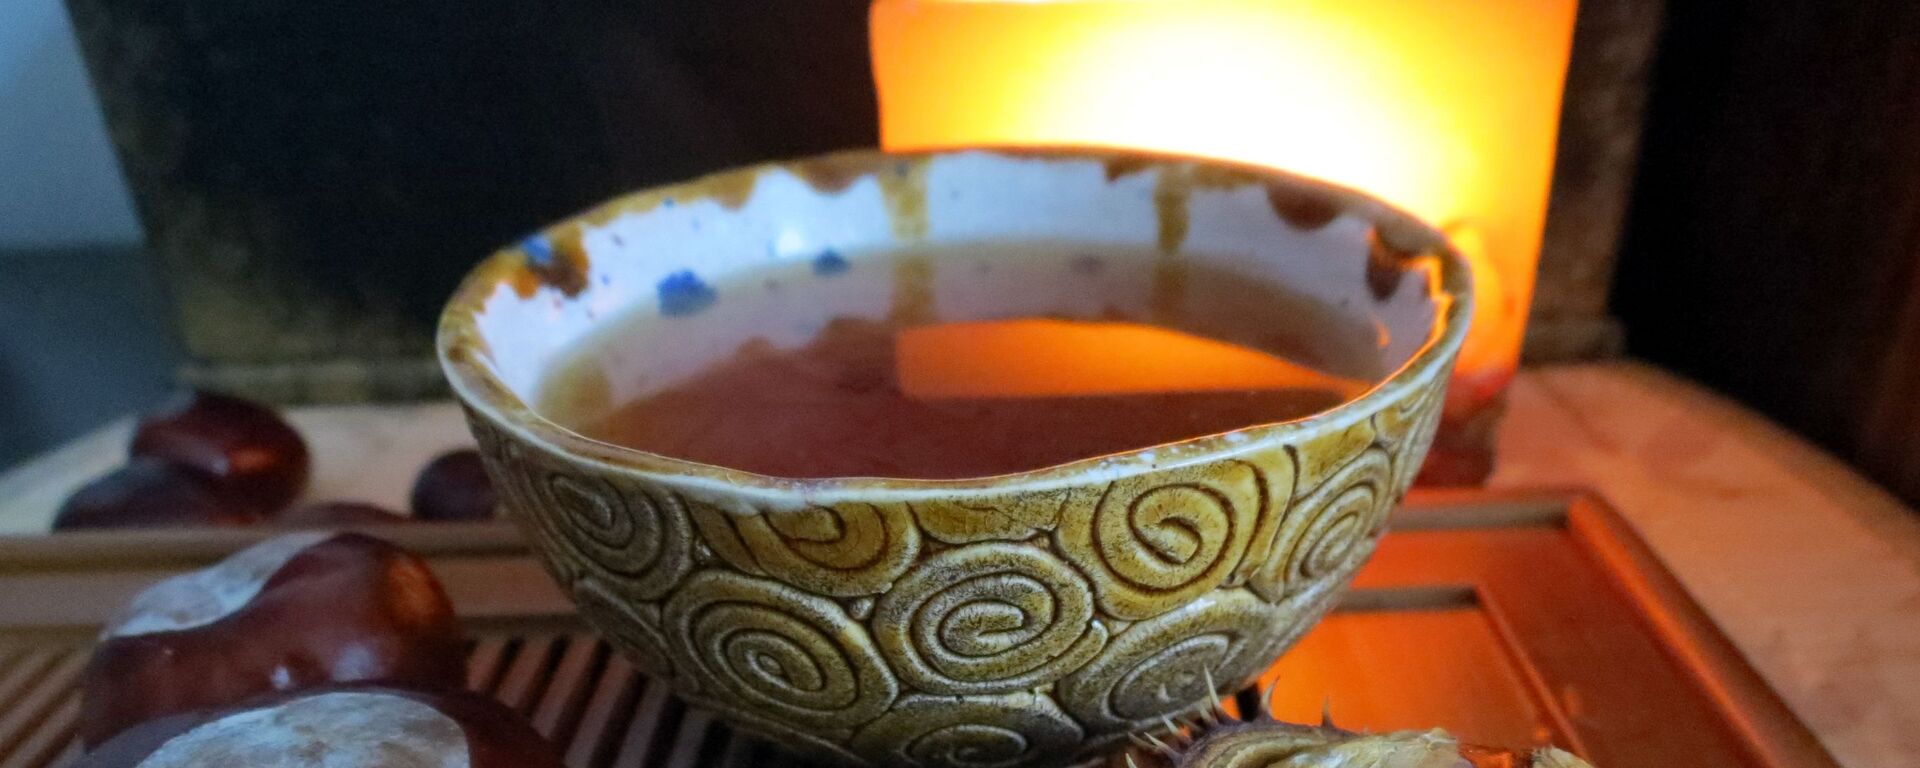 شاي أحمر على طاولة  - سبوتنيك عربي, 1920, 27.07.2021